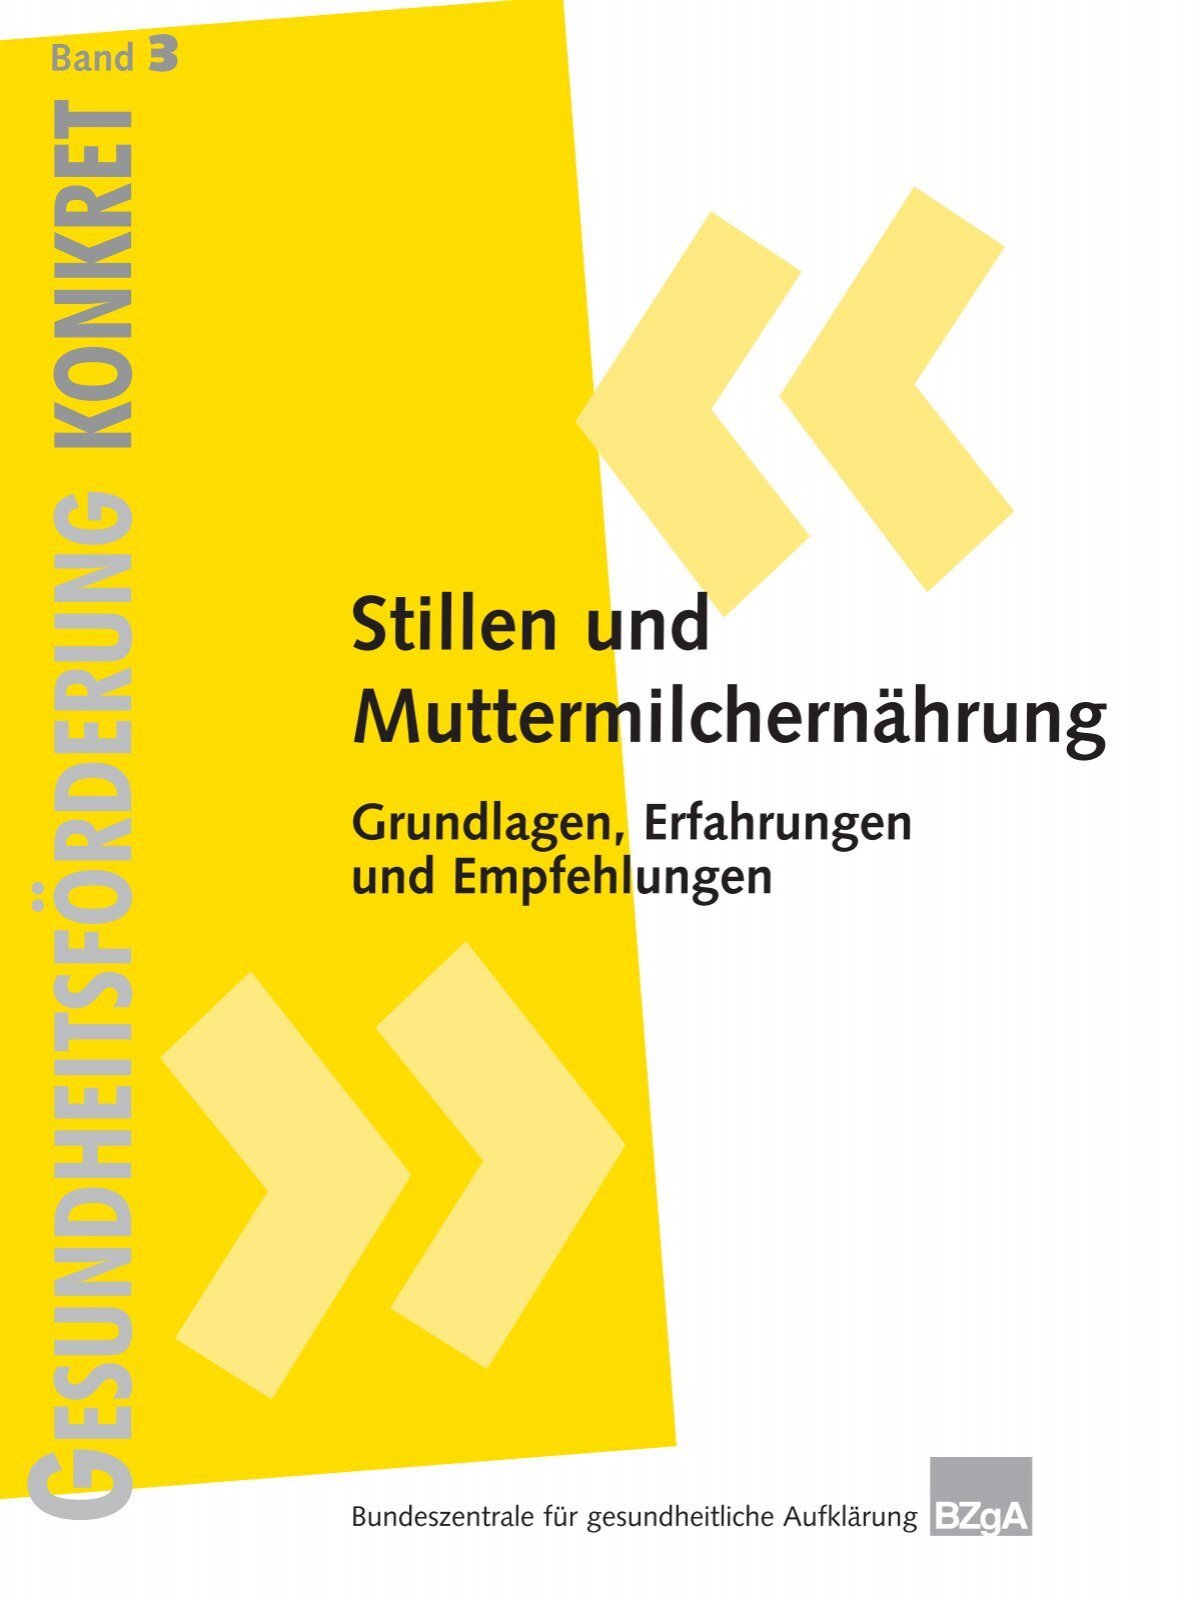 Stillen Grundlagen.pdf - Maike Rosenzweig - Hebamme